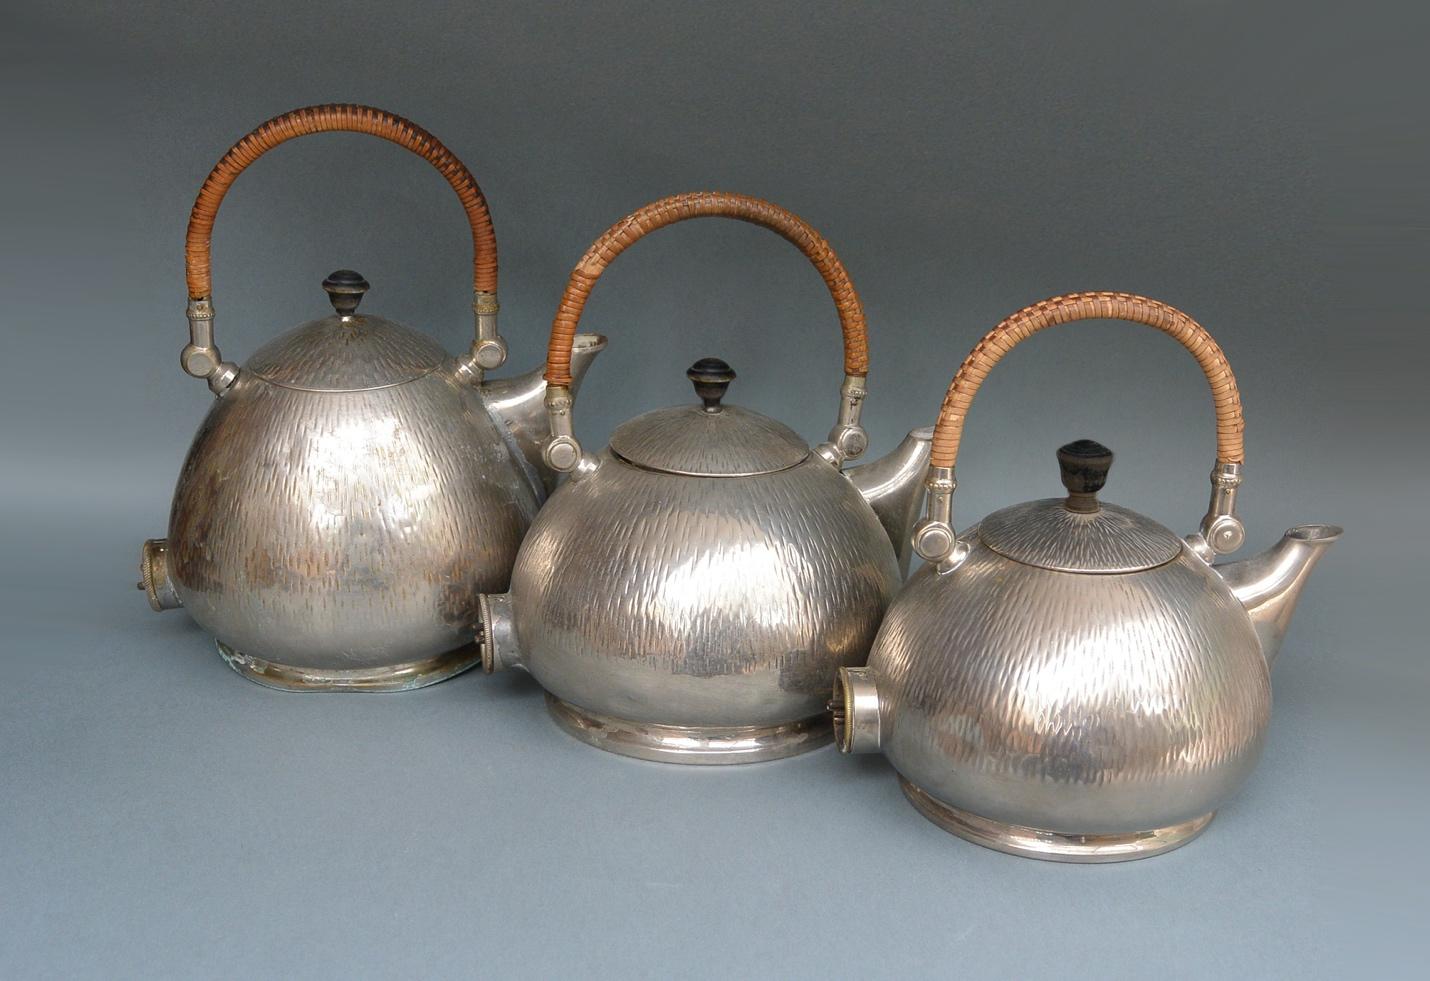 Tea kettles